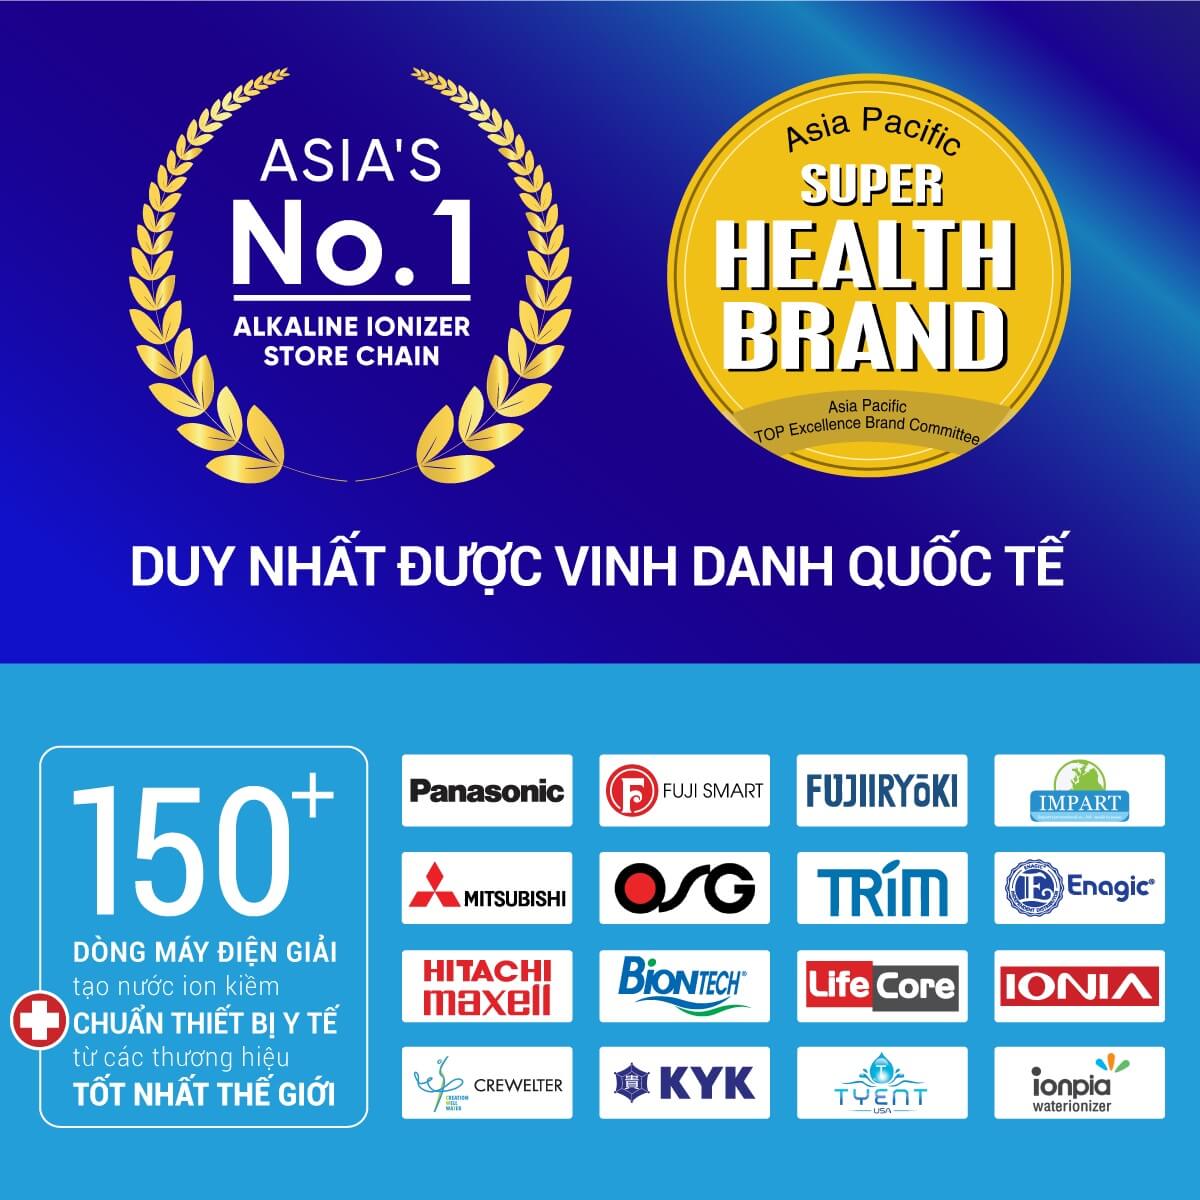 Thế Giới Điện Giải được vinh danh quốc tế với giải thưởng Asia Pacific Super Health Brand